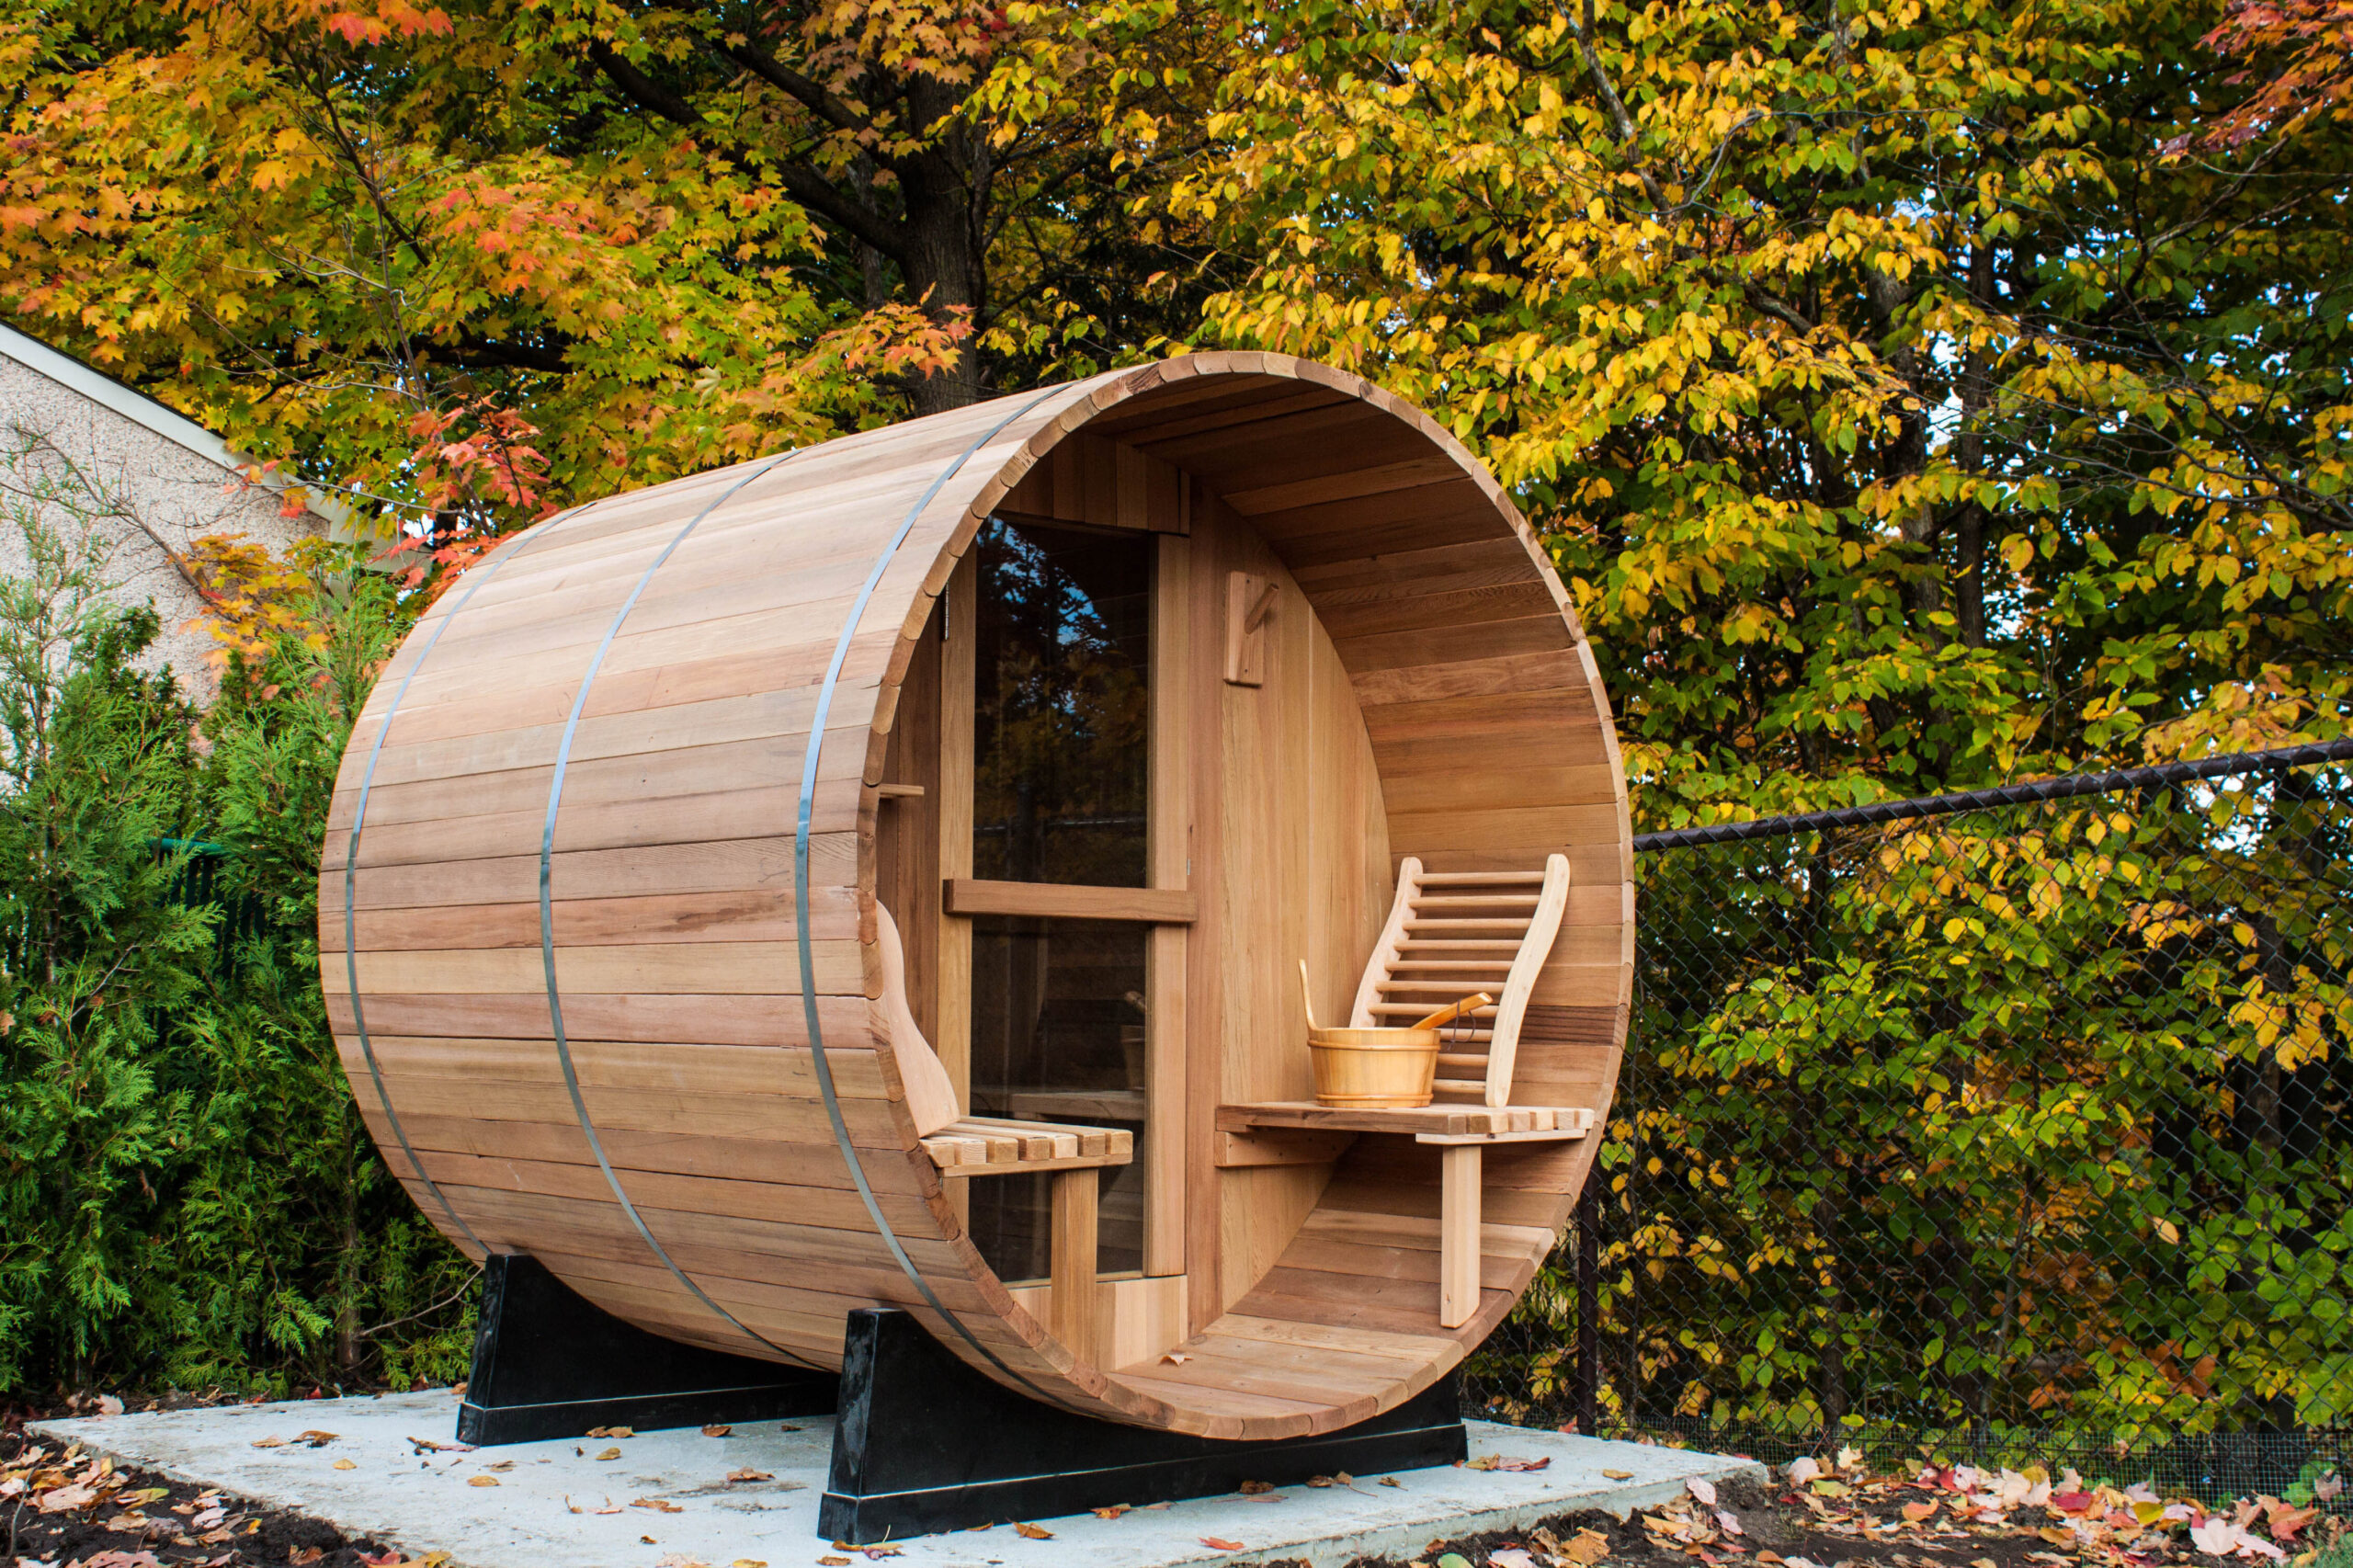 Outdoor/Indoor Western Red Cedar Barrel Sauna with Front Porch 4 Person